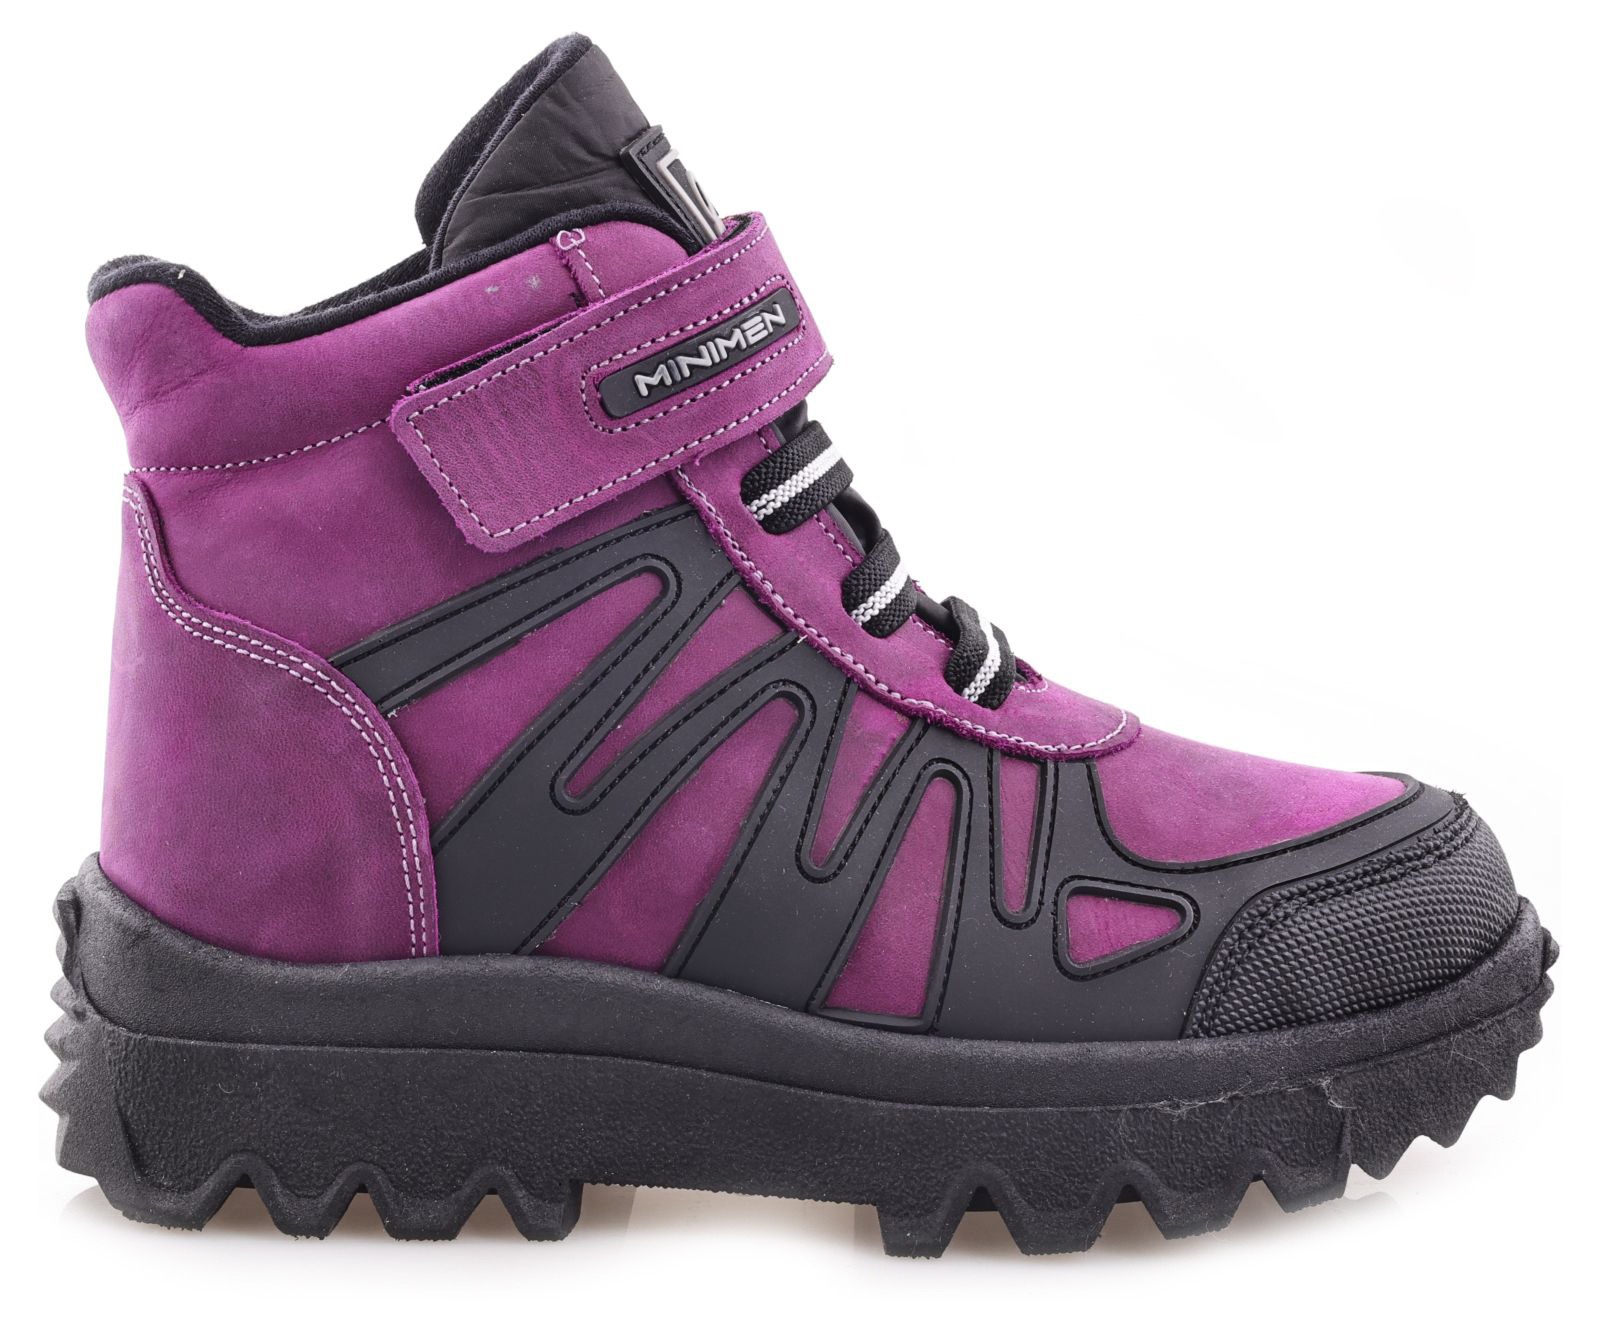 Ботинки Minimen для девочек, фиолетовые, размер 38, 2645-55-23B-02